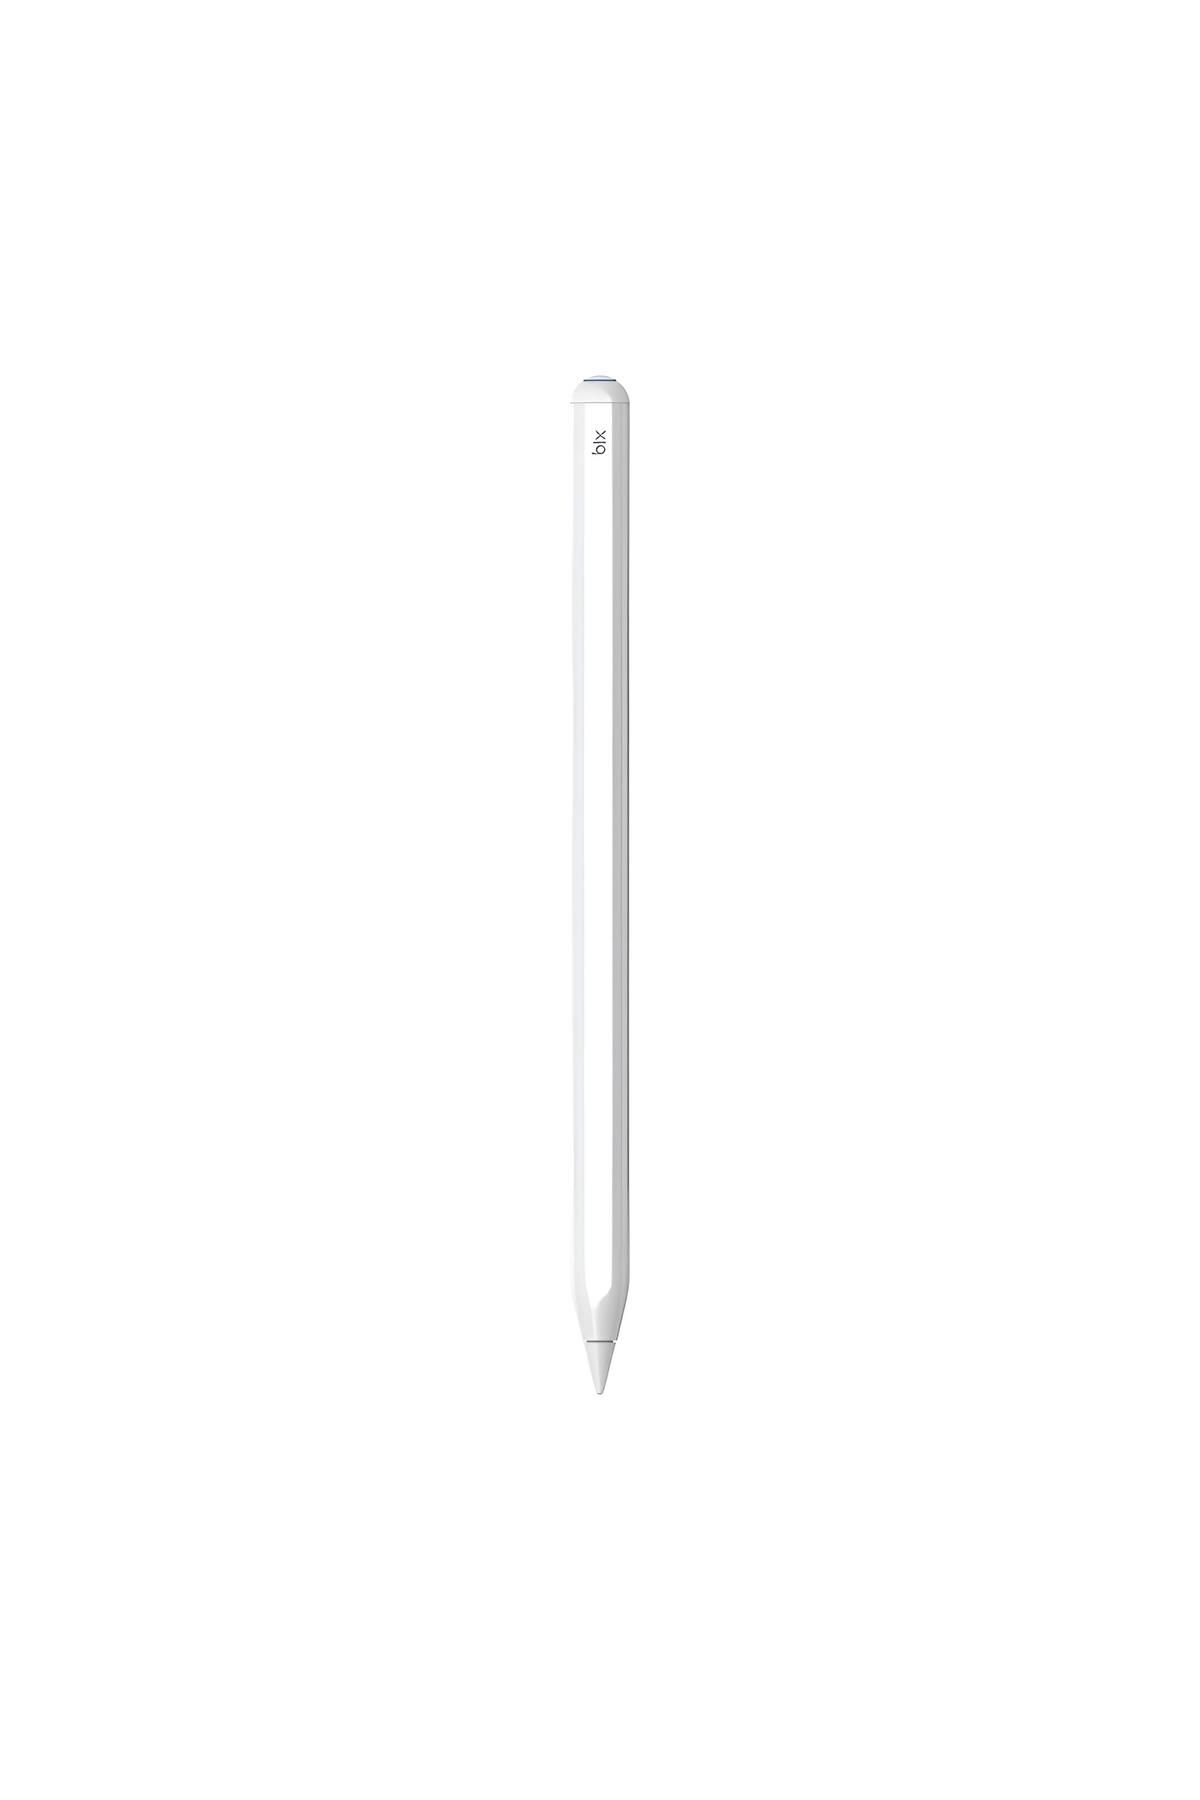 Bix Sp01 Apple Ipad Mini/pro/air Tablet Uyumlu Dokunmatik Bluetooth Stylus Yazı Ve Çizim Kalemi